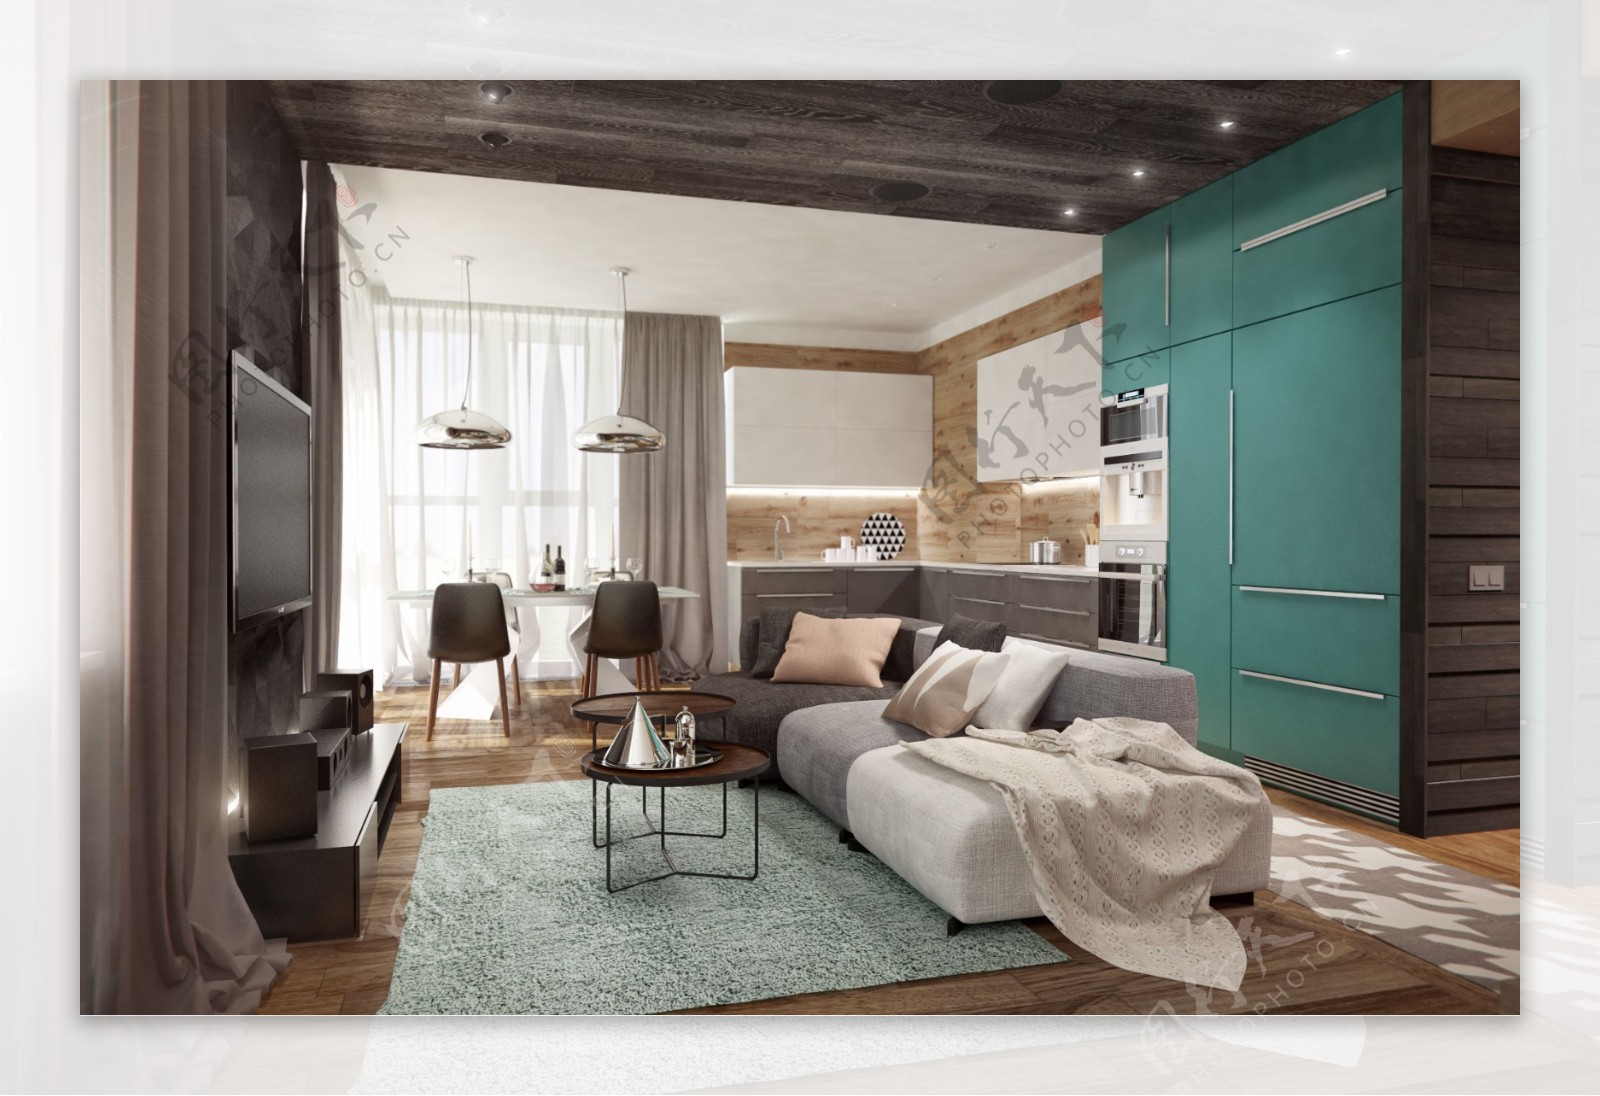 现代精致客厅蓝绿色背景墙室内装修效果图